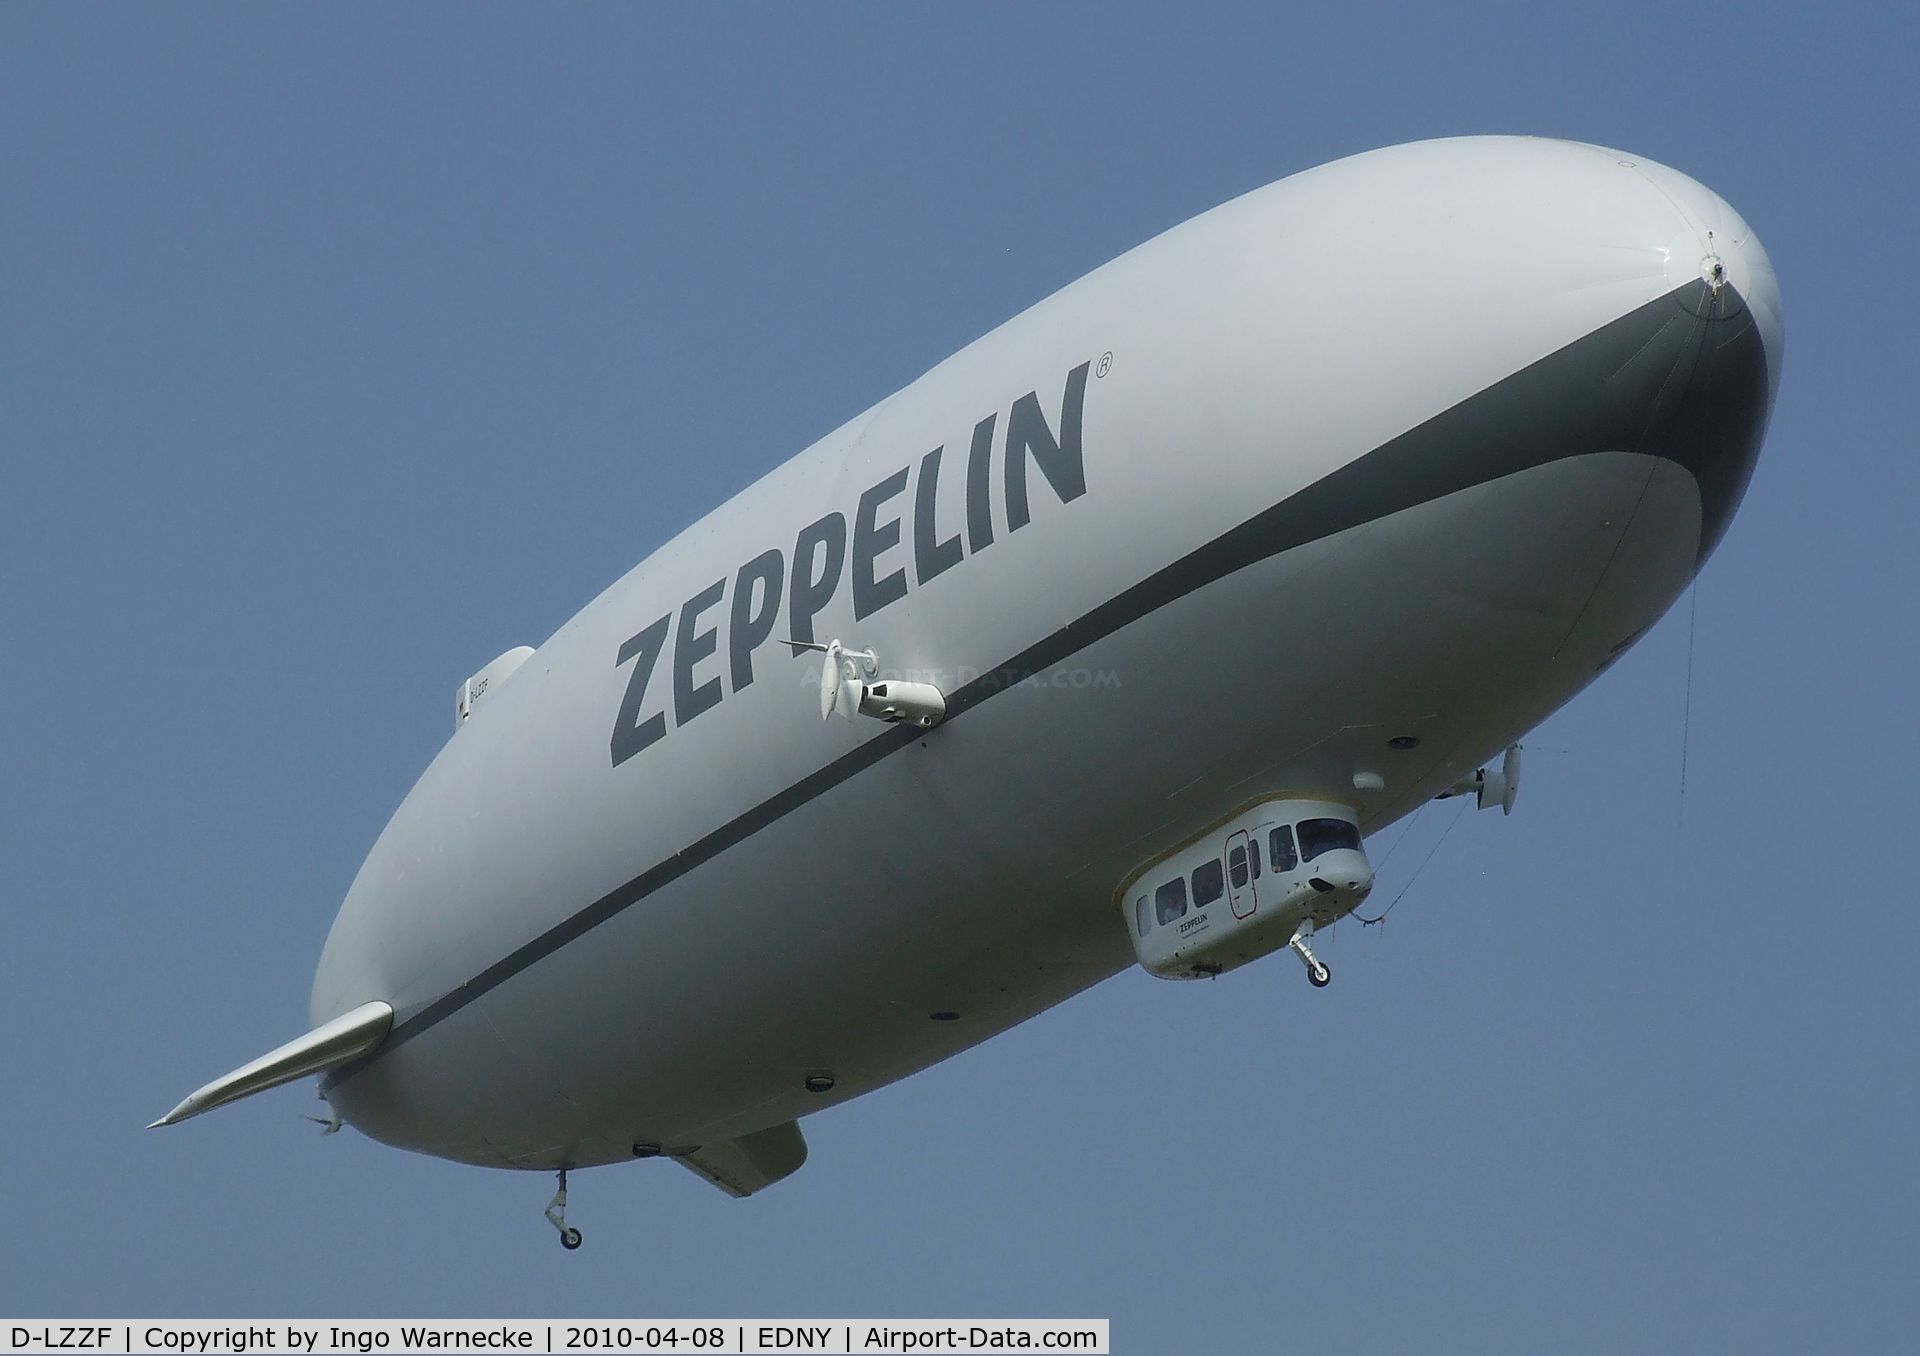 D-LZZF, 1998 Zeppelin NT07 C/N 3, Zeppelin NT LZ-N07 at the AERO 2010, Friedrichshafen